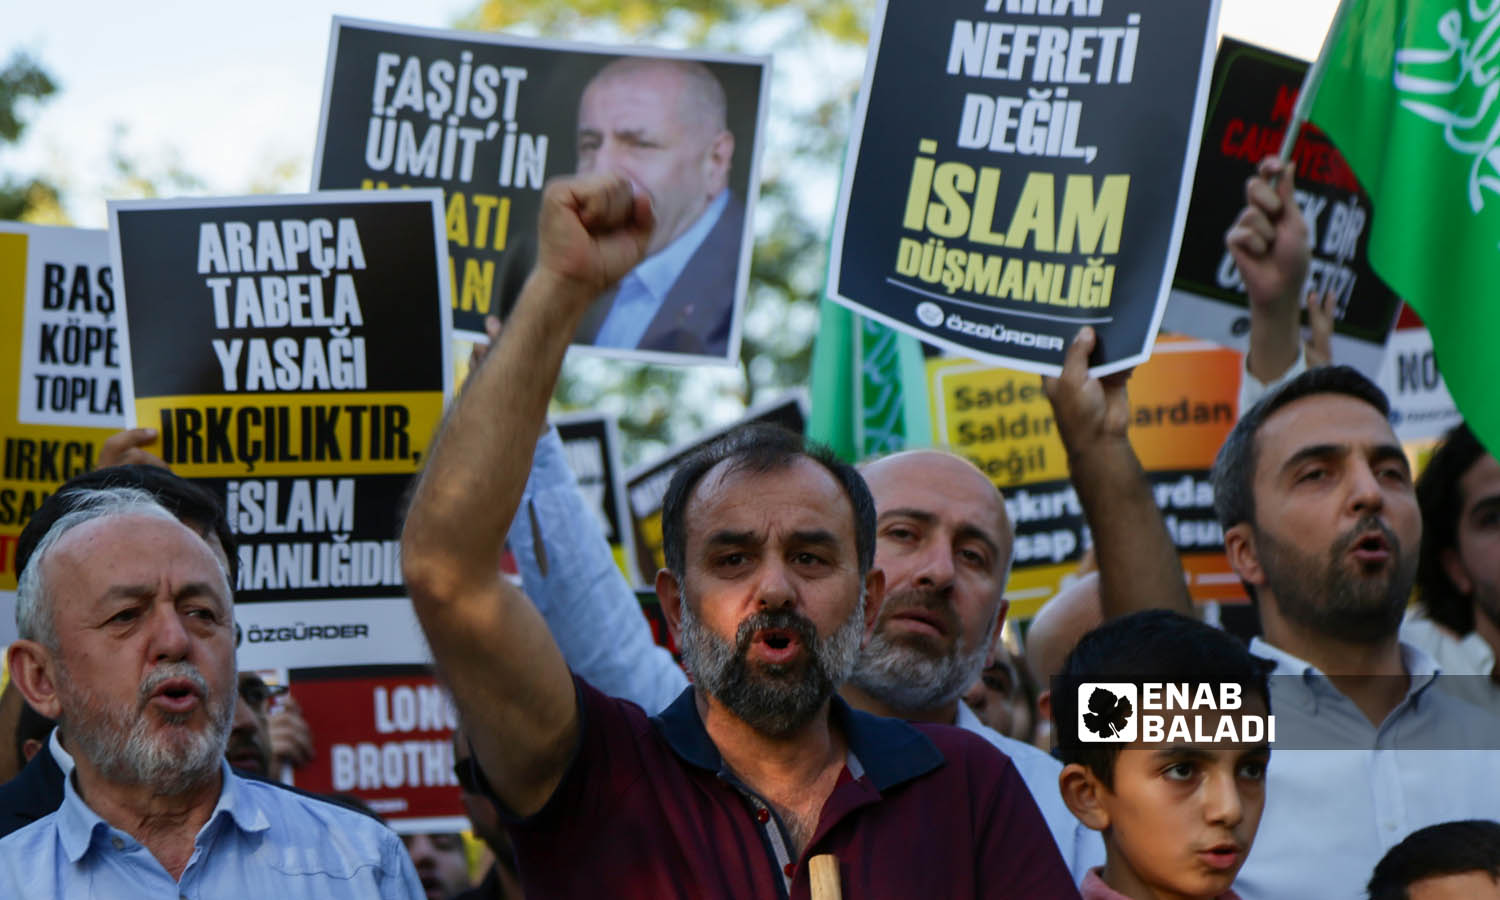 ناشطون أتراك يتضامنون مع اللاجئين السوريين في تركيا ويطالبون بوقف خطاب الكراهية ومحاسبة العنصريين- اسطنبول 16 من أيلول 2023 (عنب بلدي- يوسف حمّص)